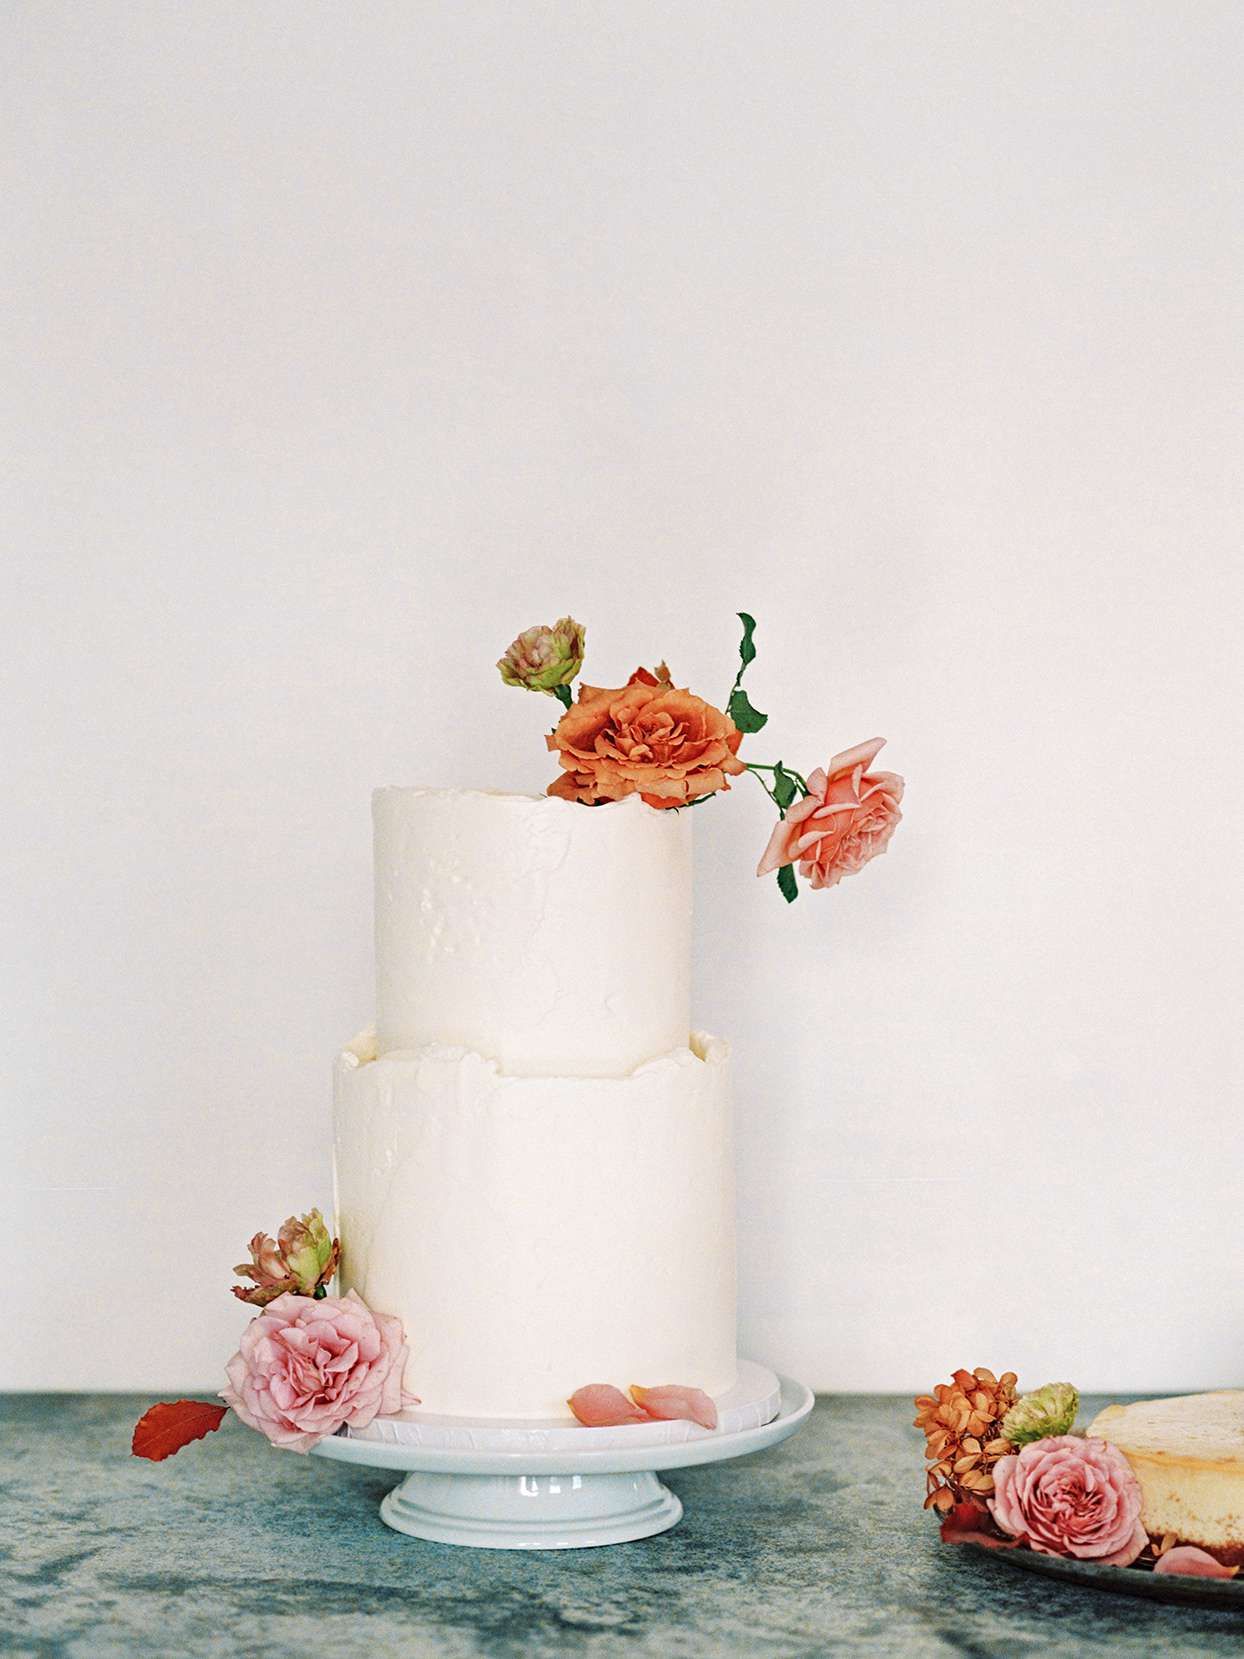 A Delicious Wedding Cake